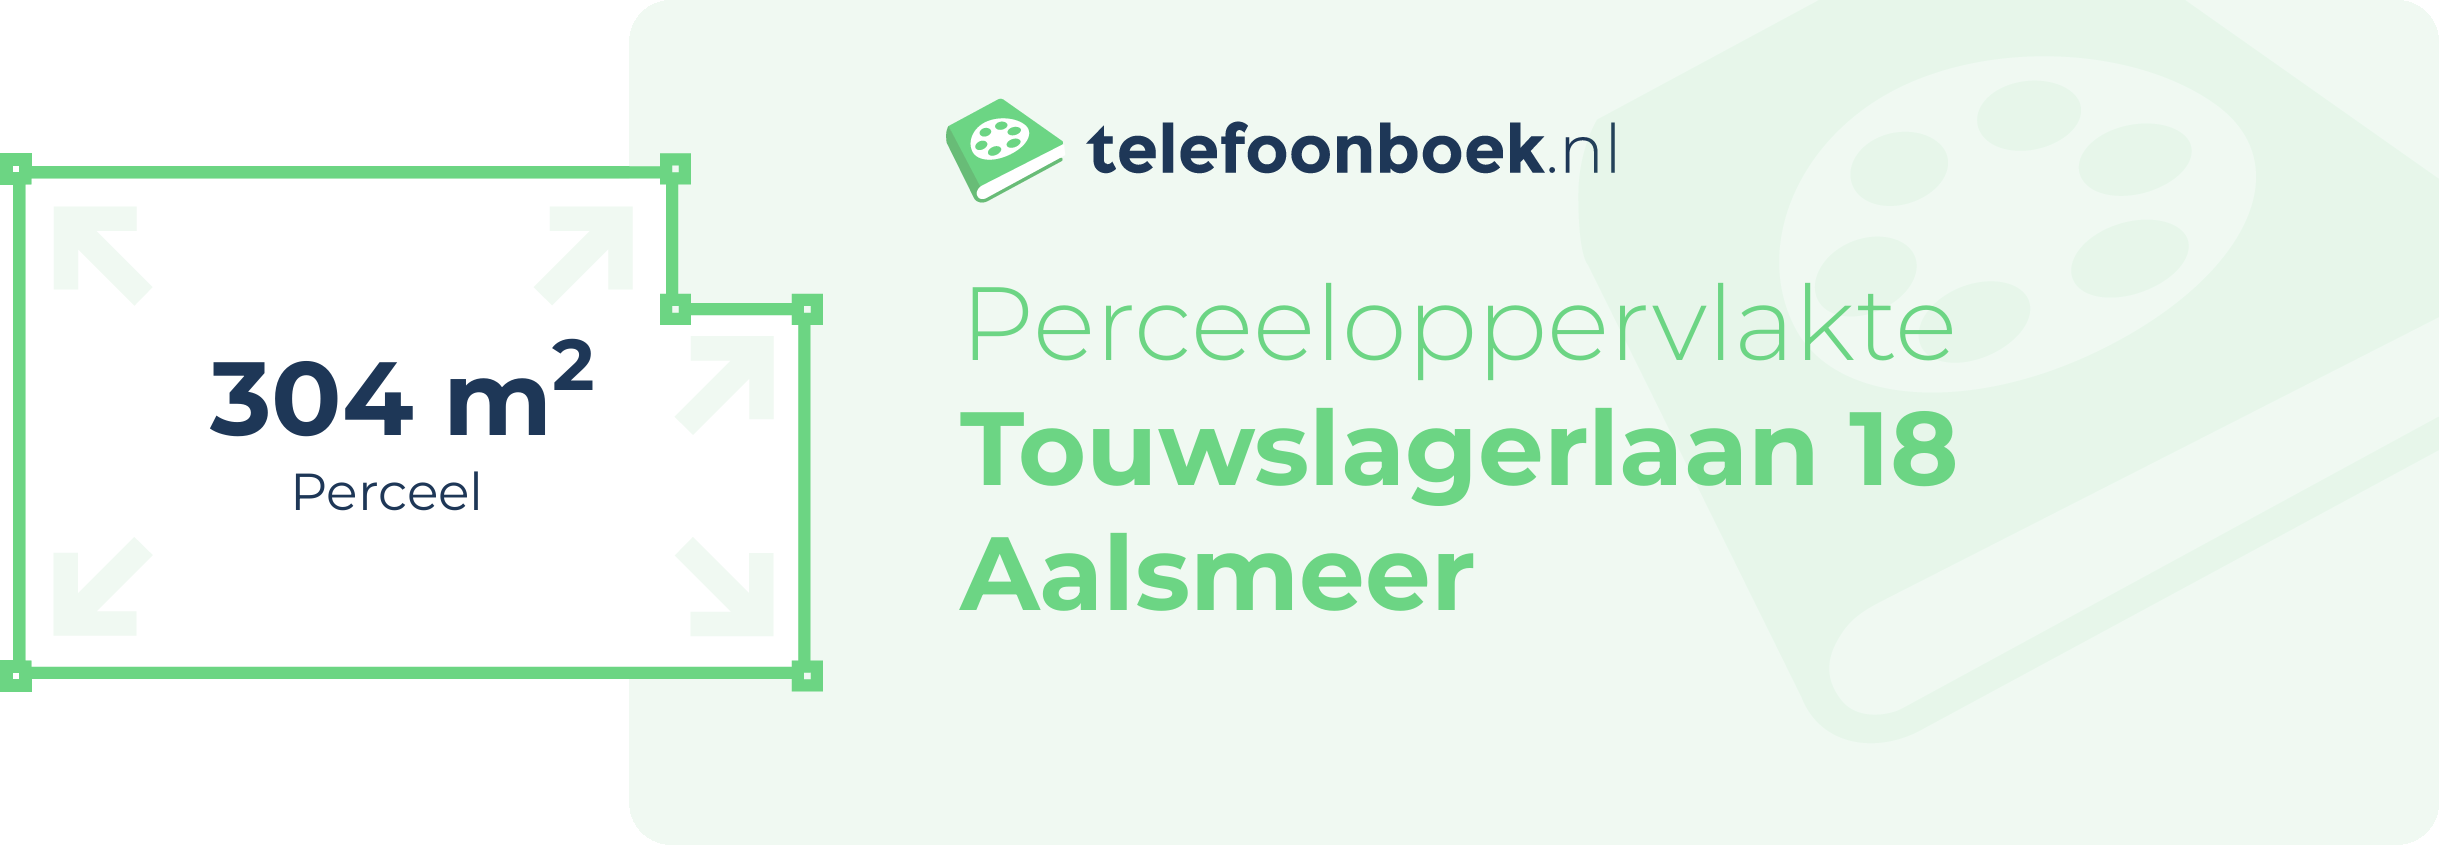 Perceeloppervlakte Touwslagerlaan 18 Aalsmeer